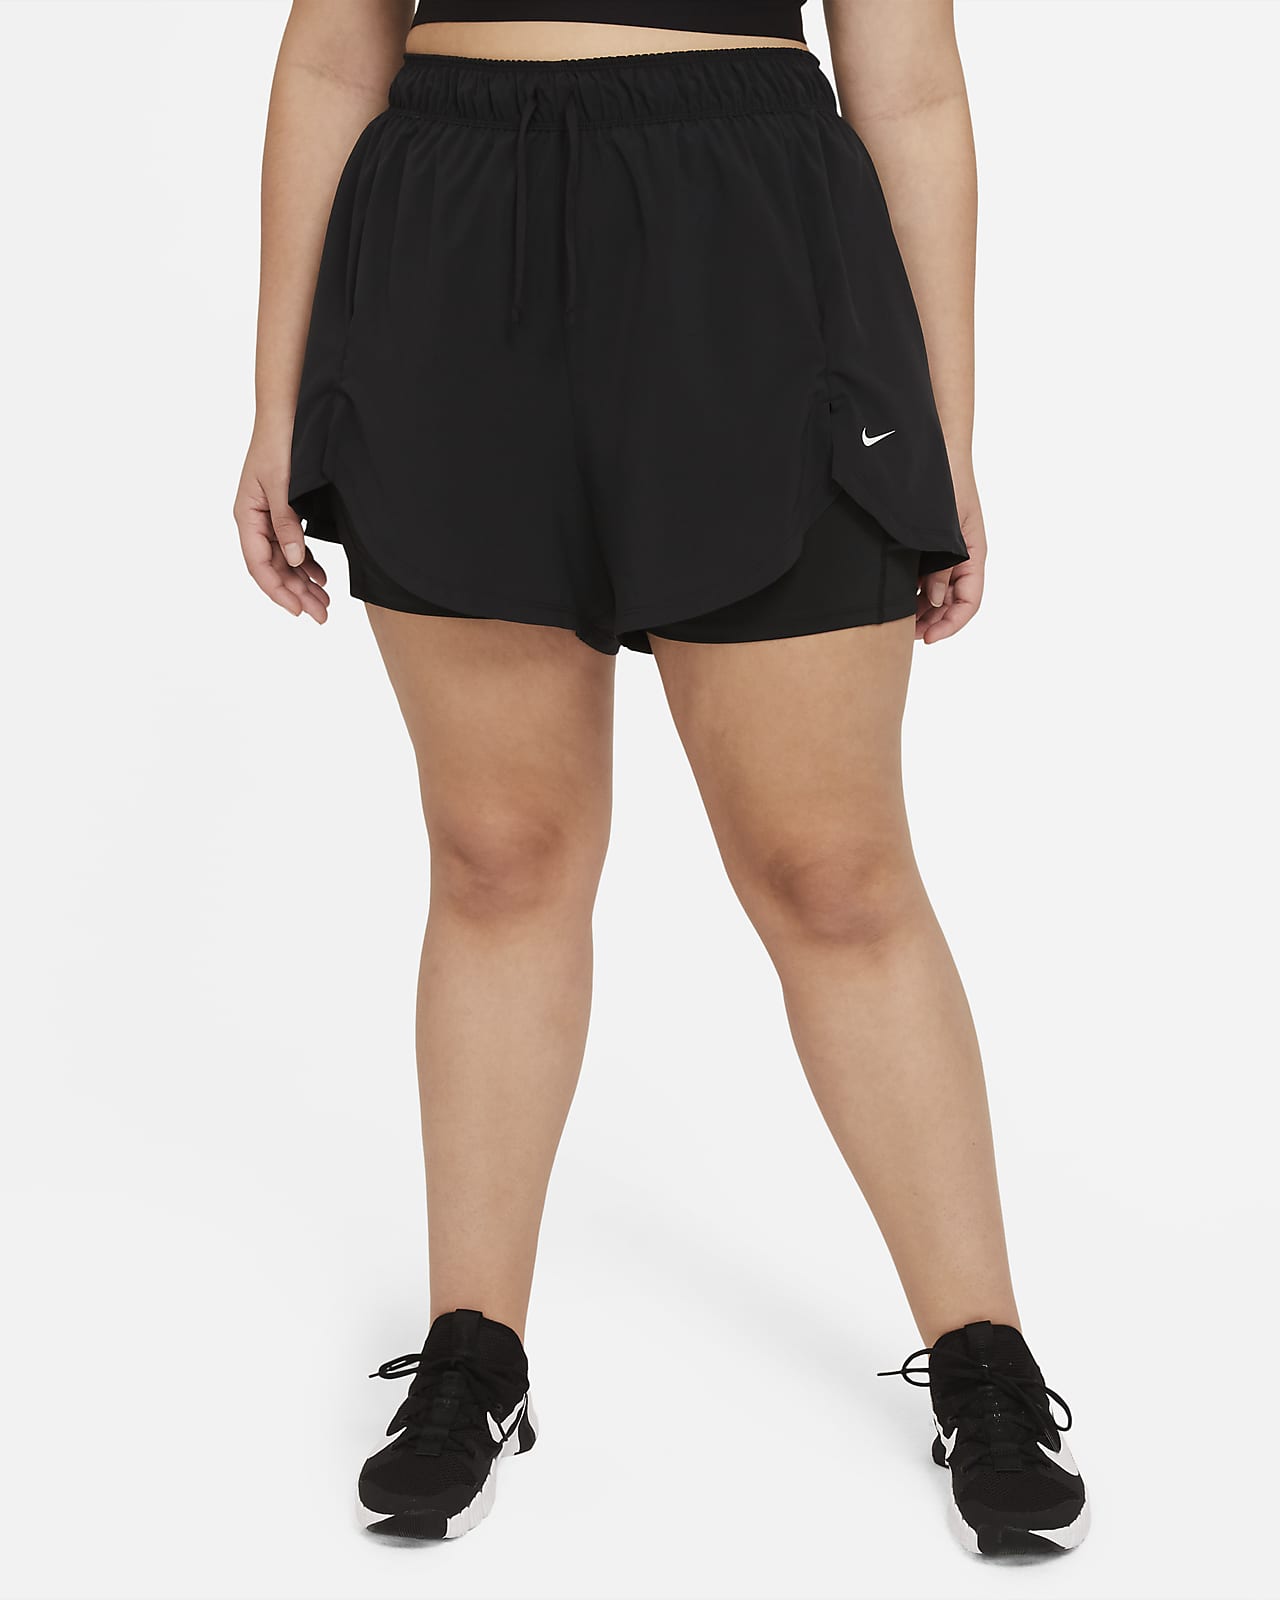 Short de training 2-en-1 Nike Flex Essential pour Femme (grande taille)